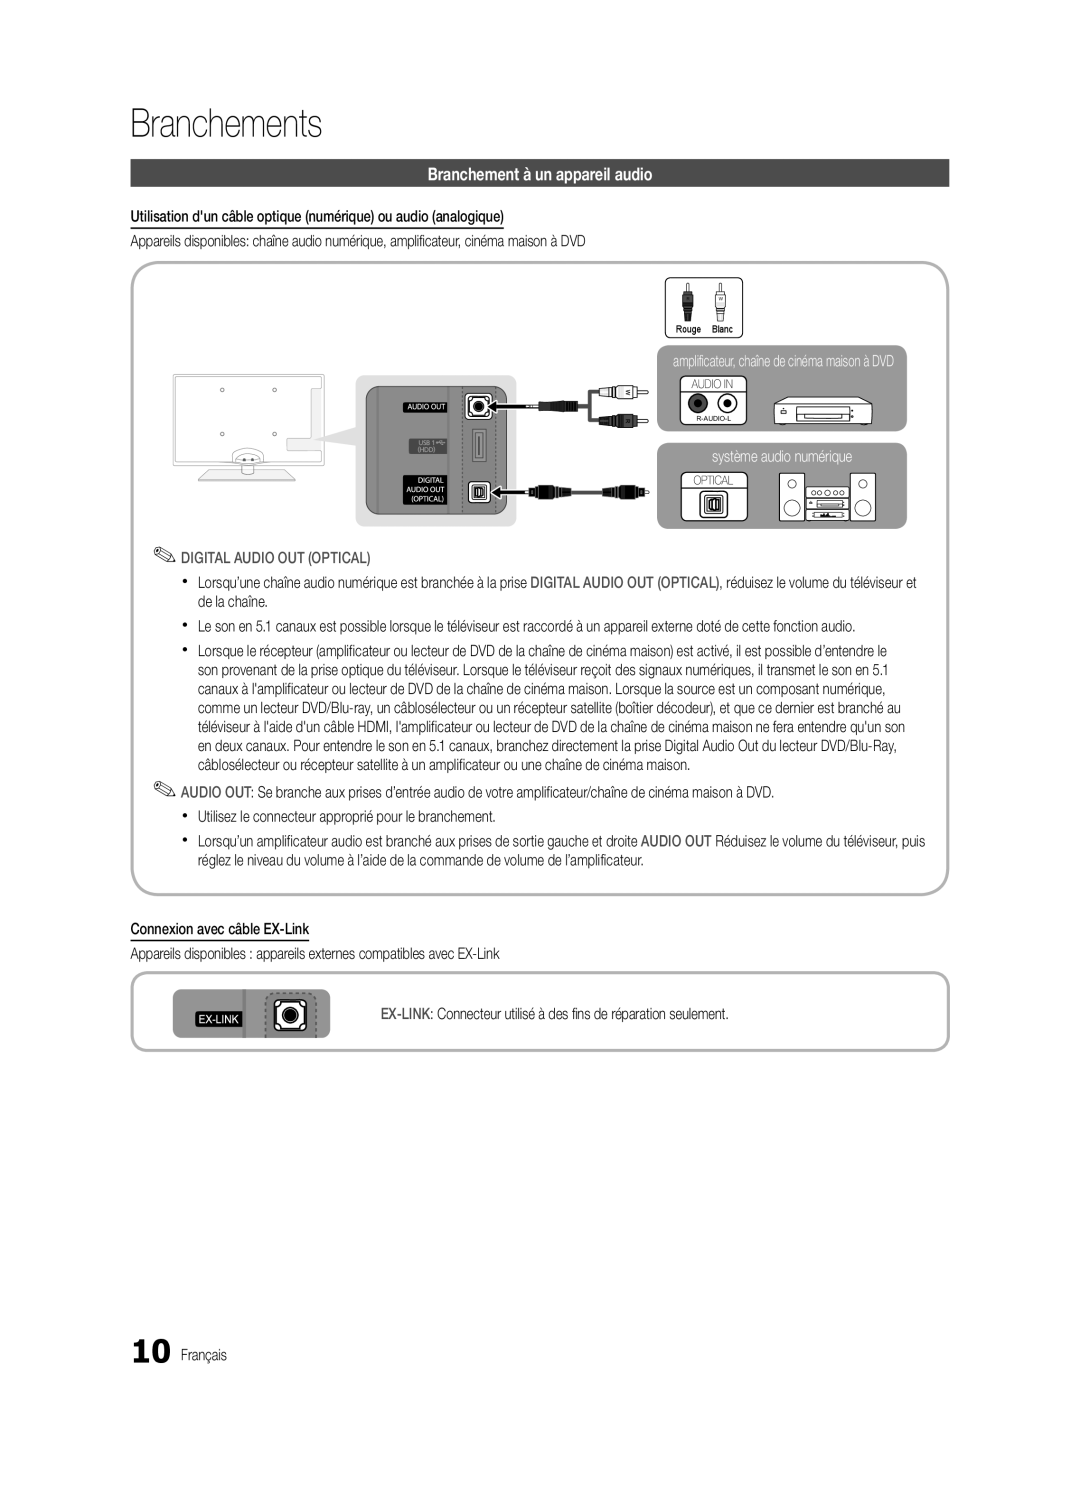 Samsung BN68-03165B-01 Branchement à un appareil audio, amplificateur, chaîne de cinéma maison à DVD, Branchements 